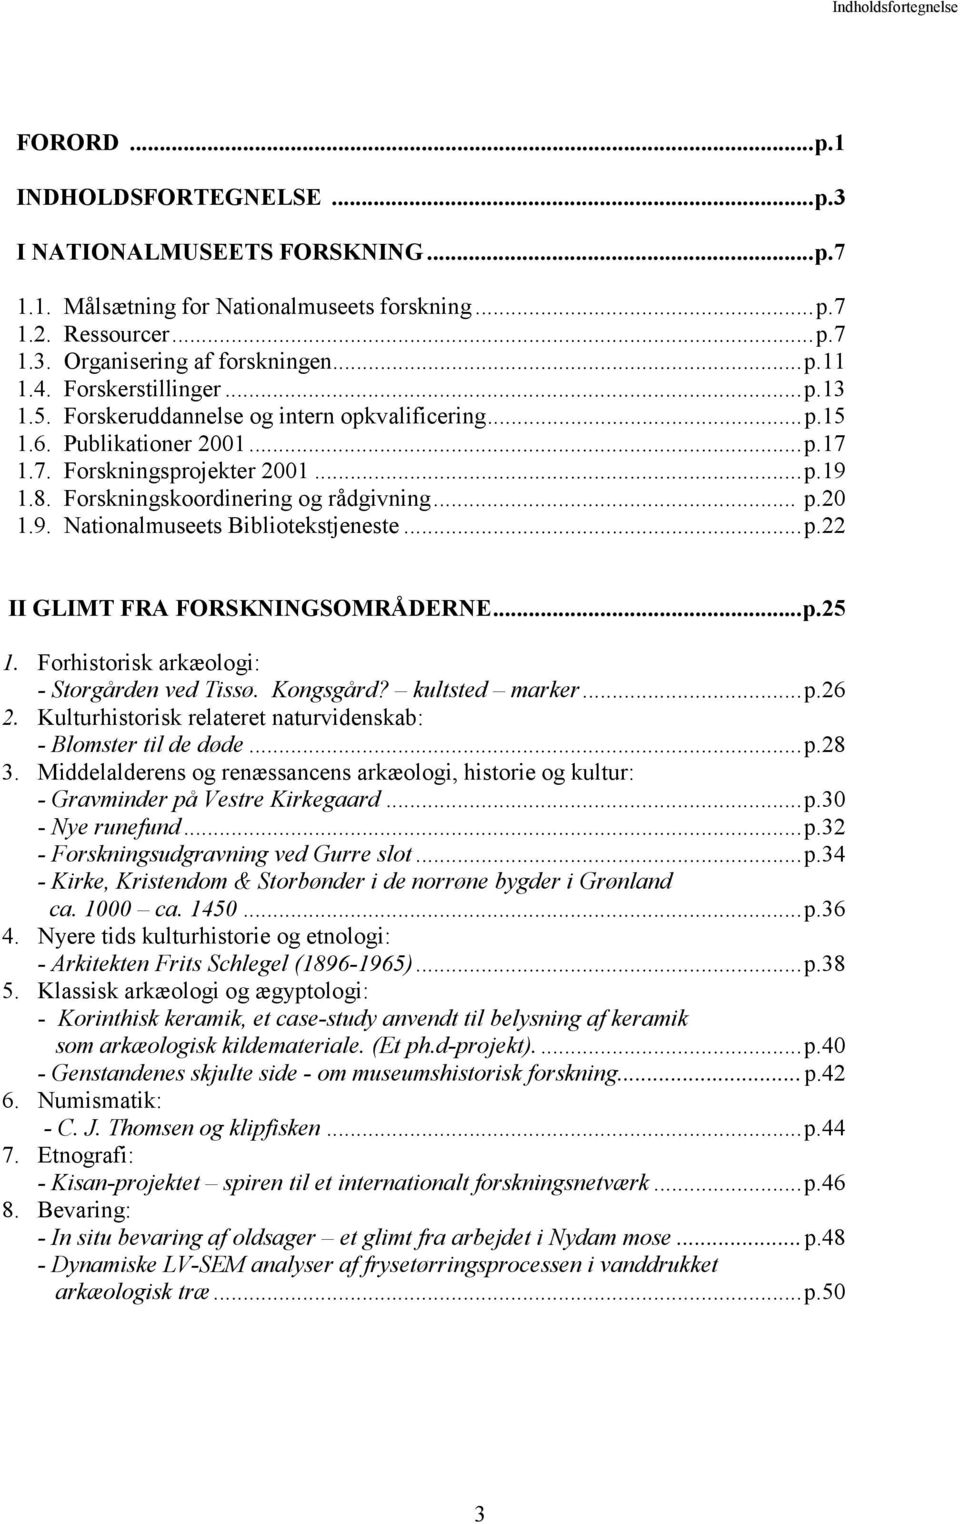 Forskningskoordinering og rådgivning... p.20 1.9. Nationalmuseets Bibliotekstjeneste...p.22 II GLIMT FRA FORSKNINGSOMRÅDERNE...p.25 1. Forhistorisk arkæologi: - Storgården ved Tissø. Kongsgård?